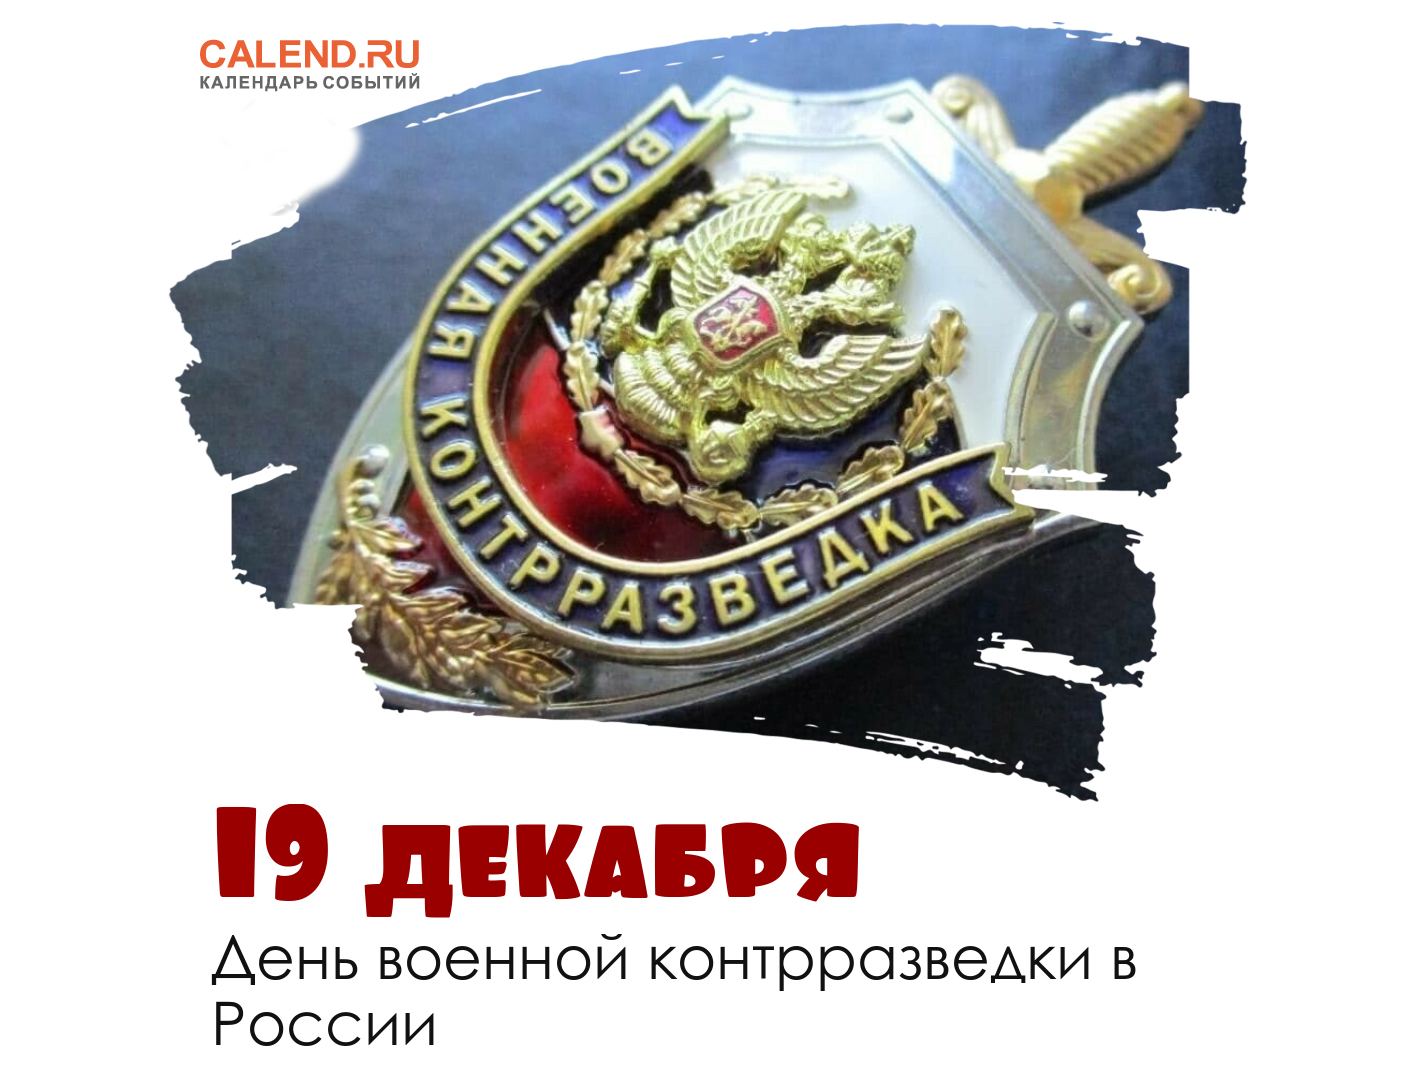 19 декабря - День военной контрразведки в России.